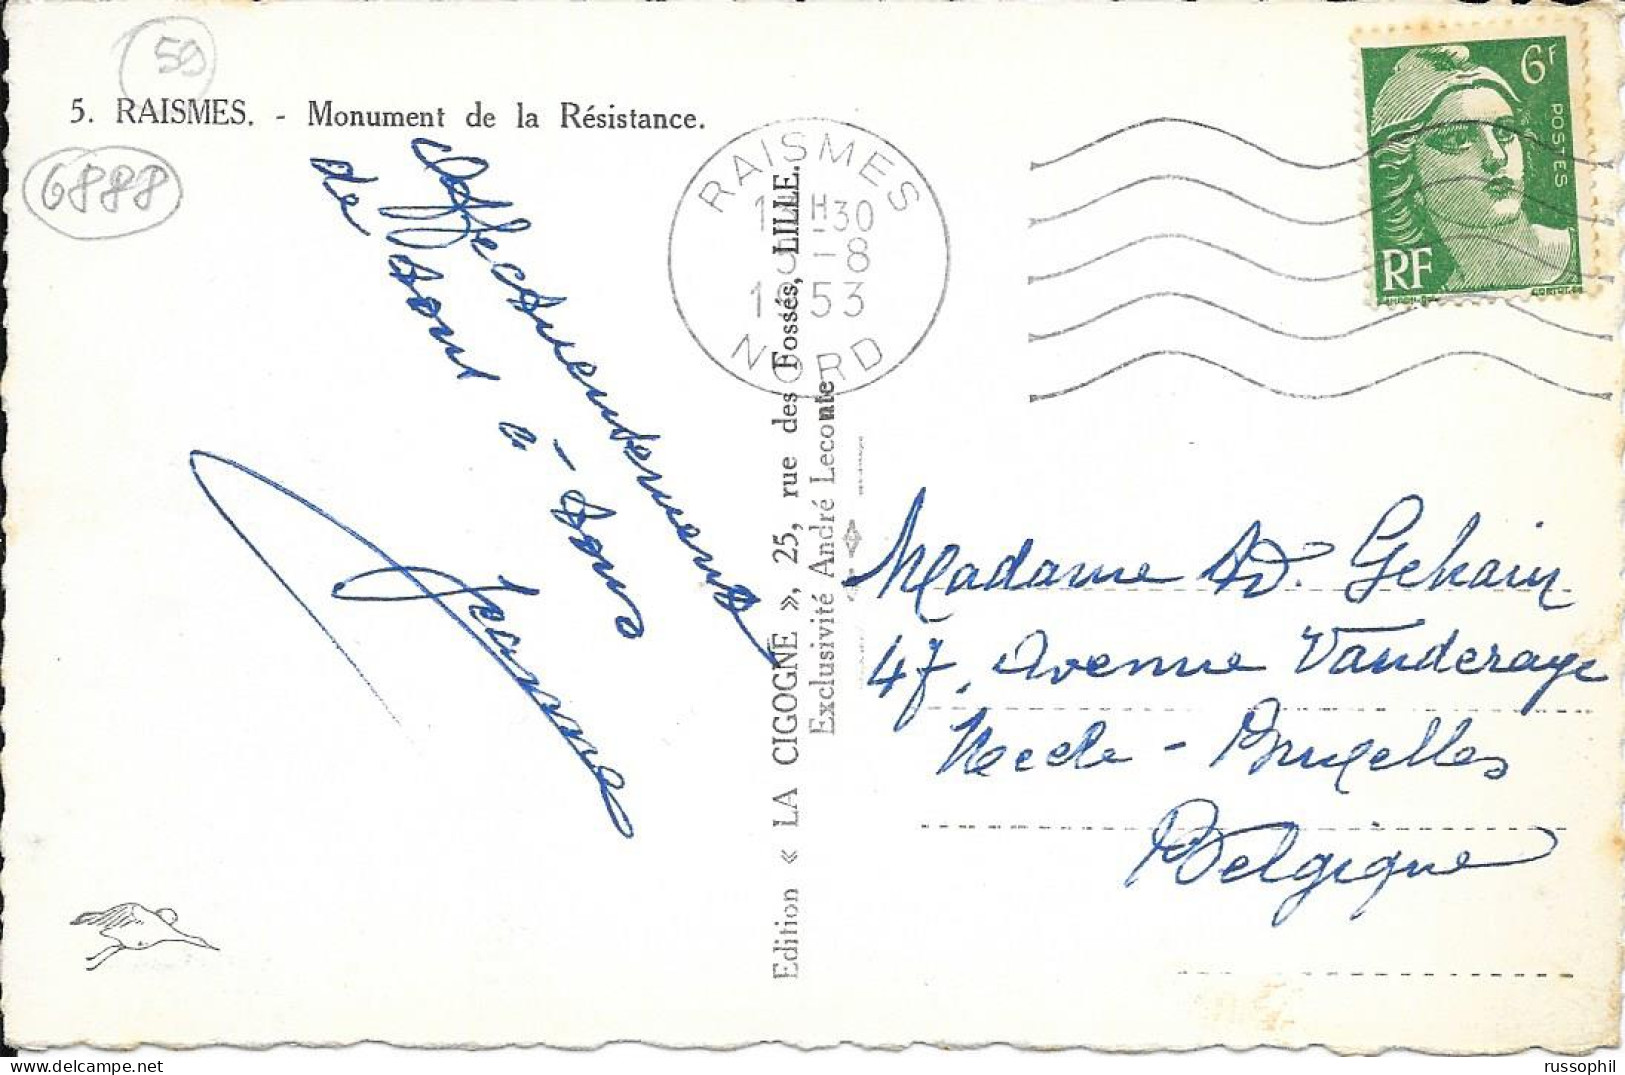 FRANCE - 59 - RAISMES - MONUMENT DE LA RESISTANCE - ED. LA CIGOGNE - 1953 - Raismes